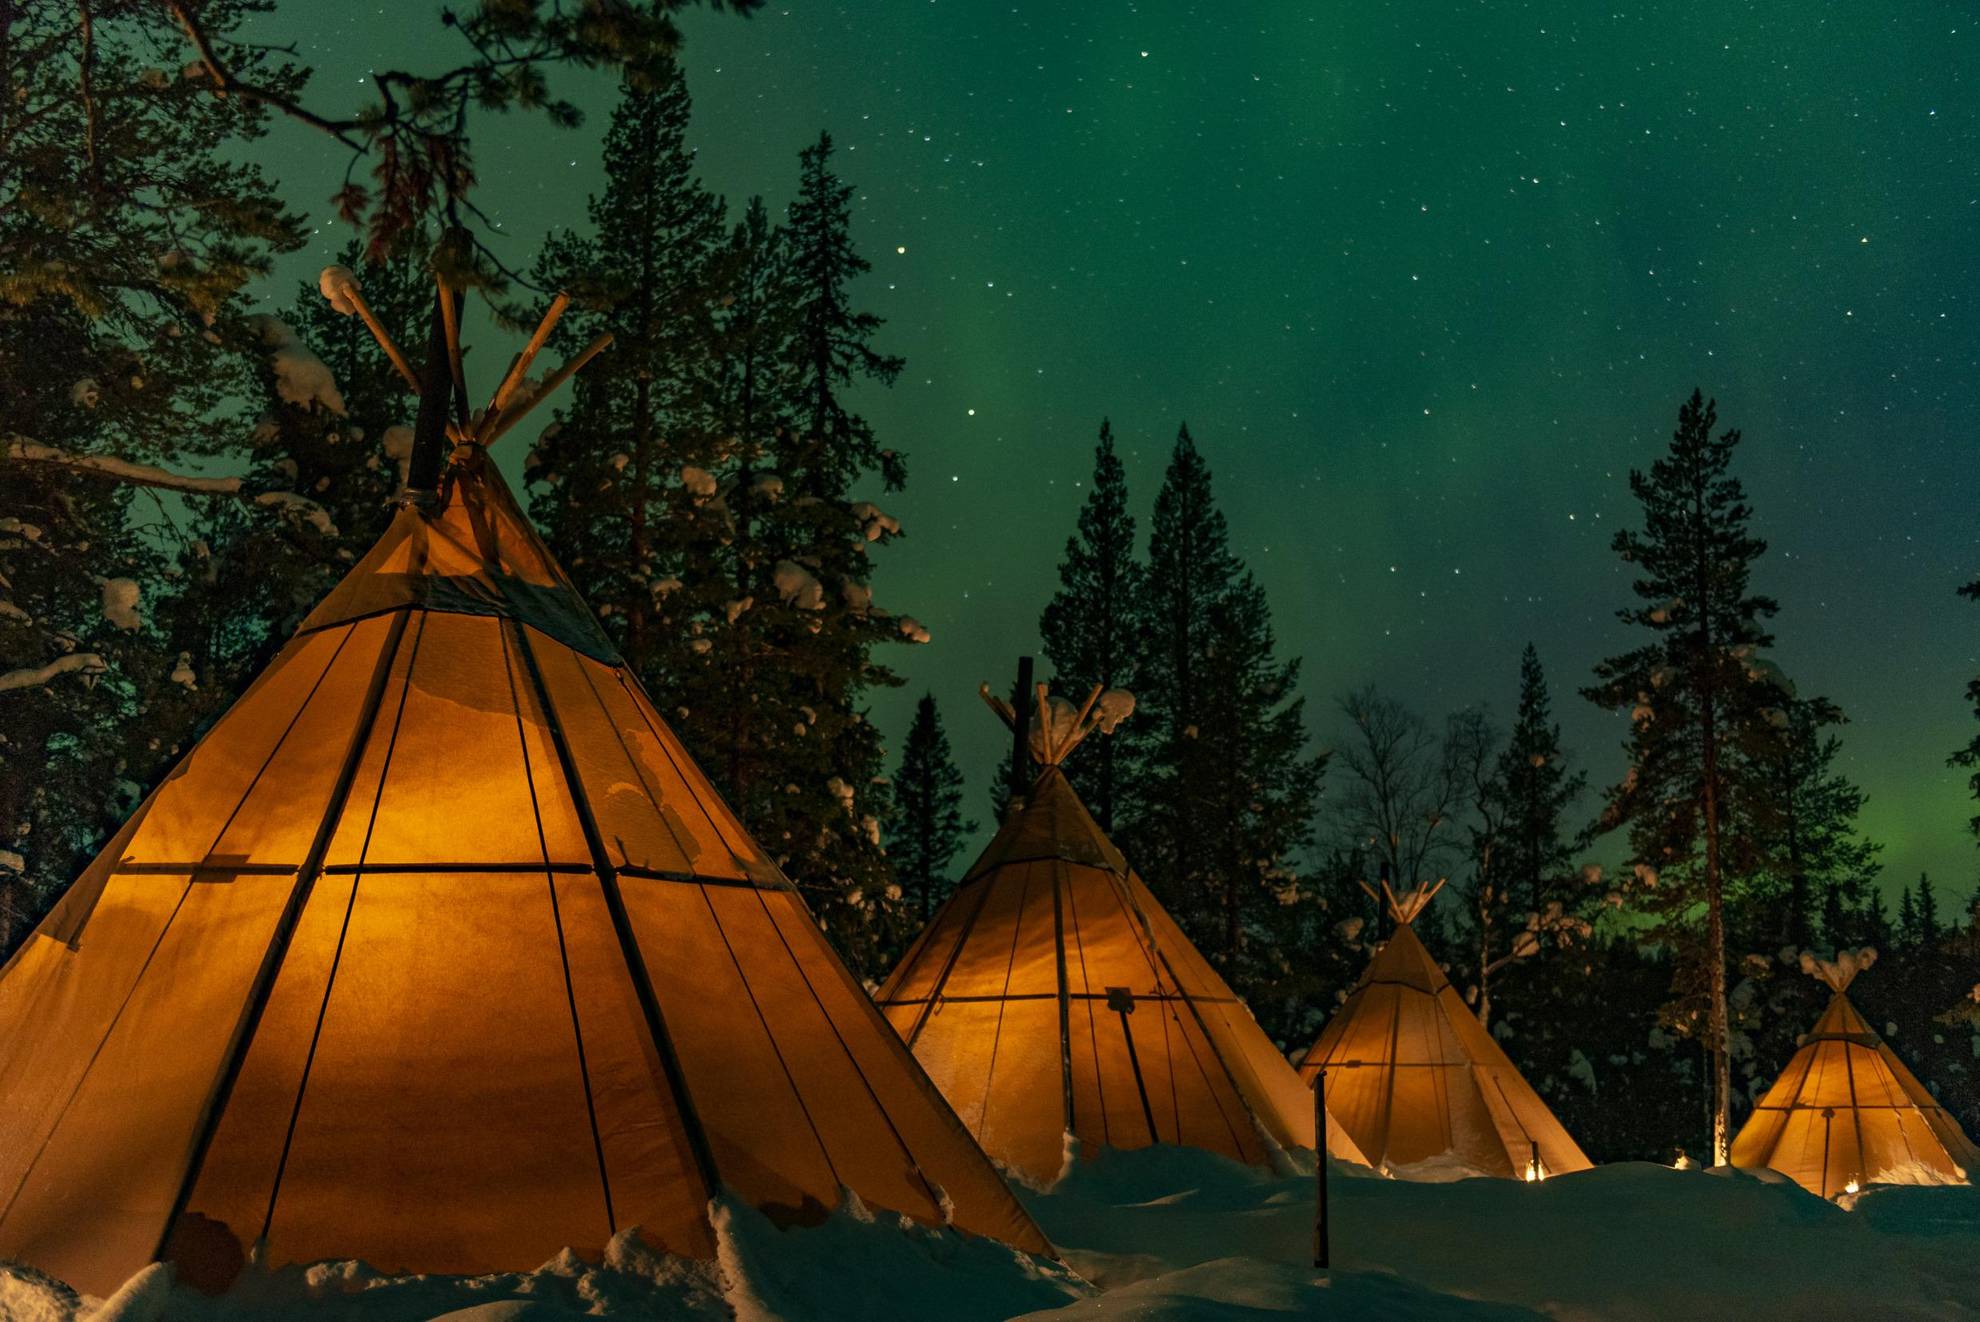 Vier lavvu-tenten op een natuurkamp in Lapland. Het is een sterrennacht in een besneeuwd landschap en het licht gloeit in de tenten.